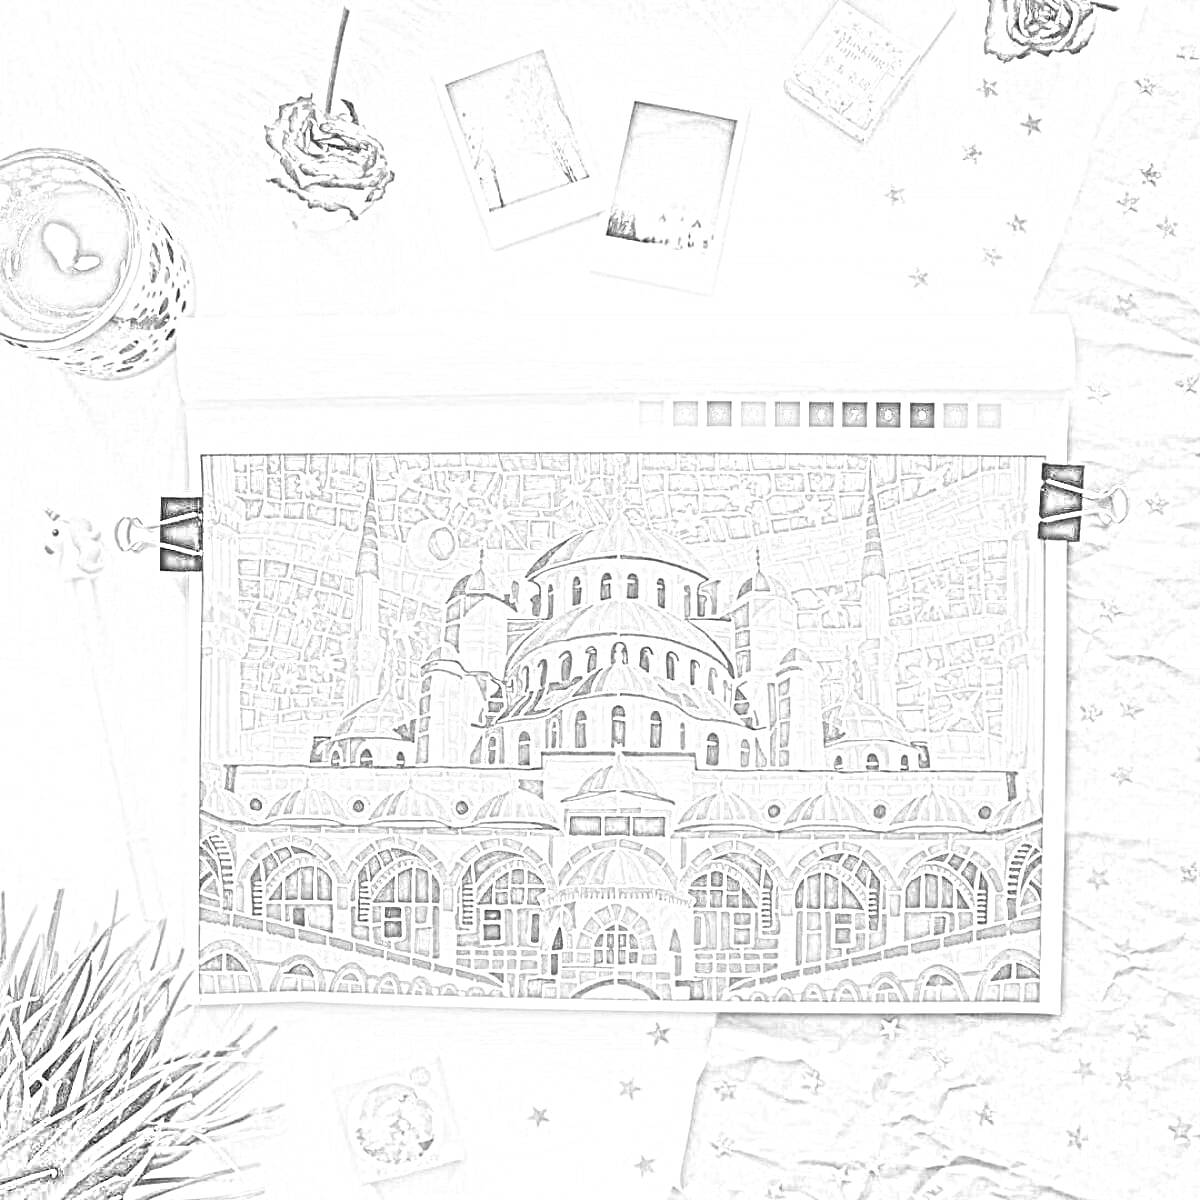 Раскраска раскраска с изображением архитектурного здания с куполами и минаретами, окруженное предметами (напиток, цветы, фоторамки, коробка на столе, звездочки, трава)